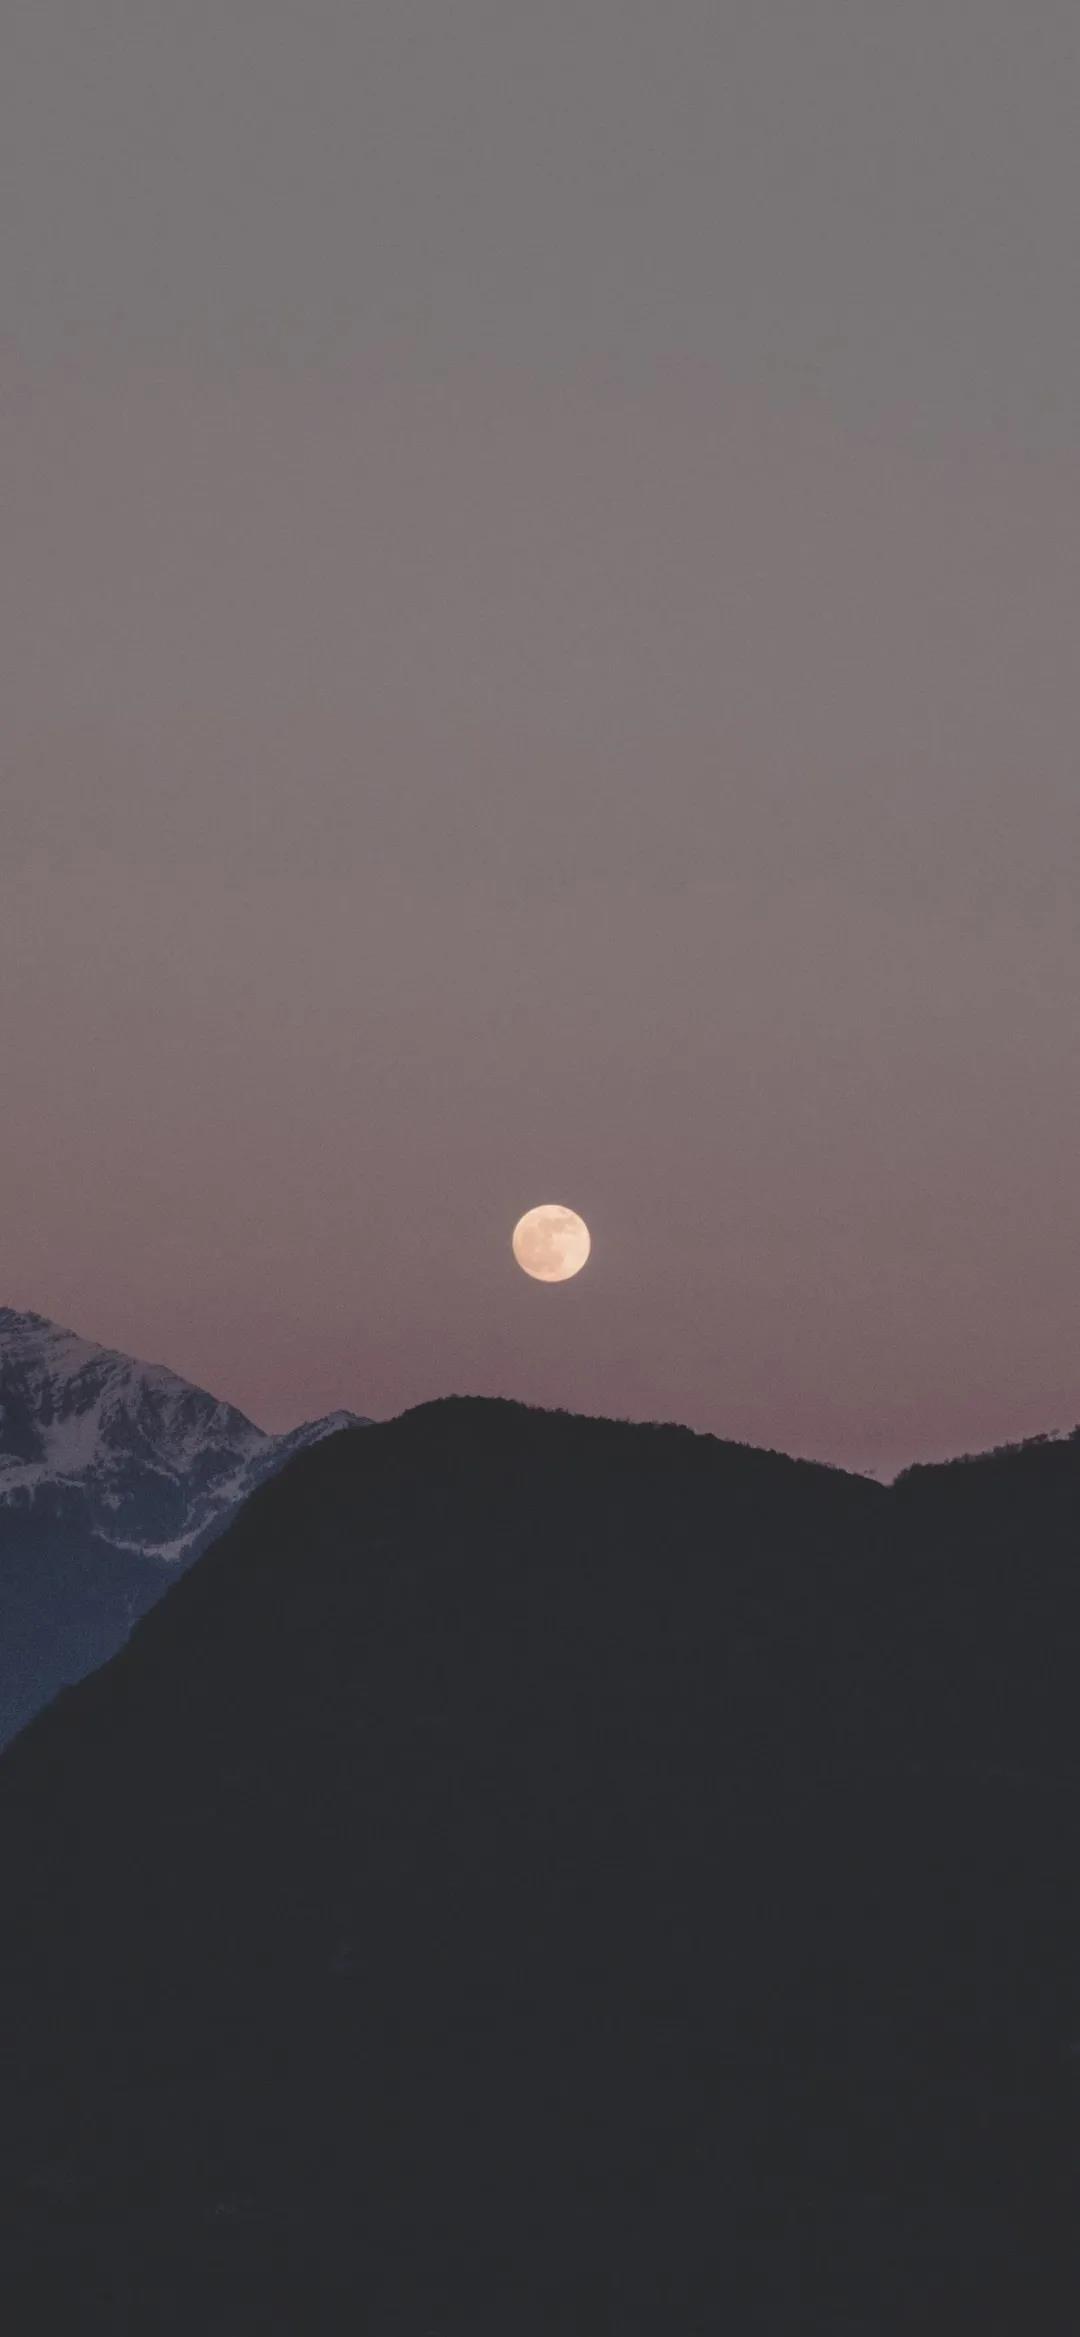 八月十五的月亮又圆又亮高清唯美夜景手机壁纸图片